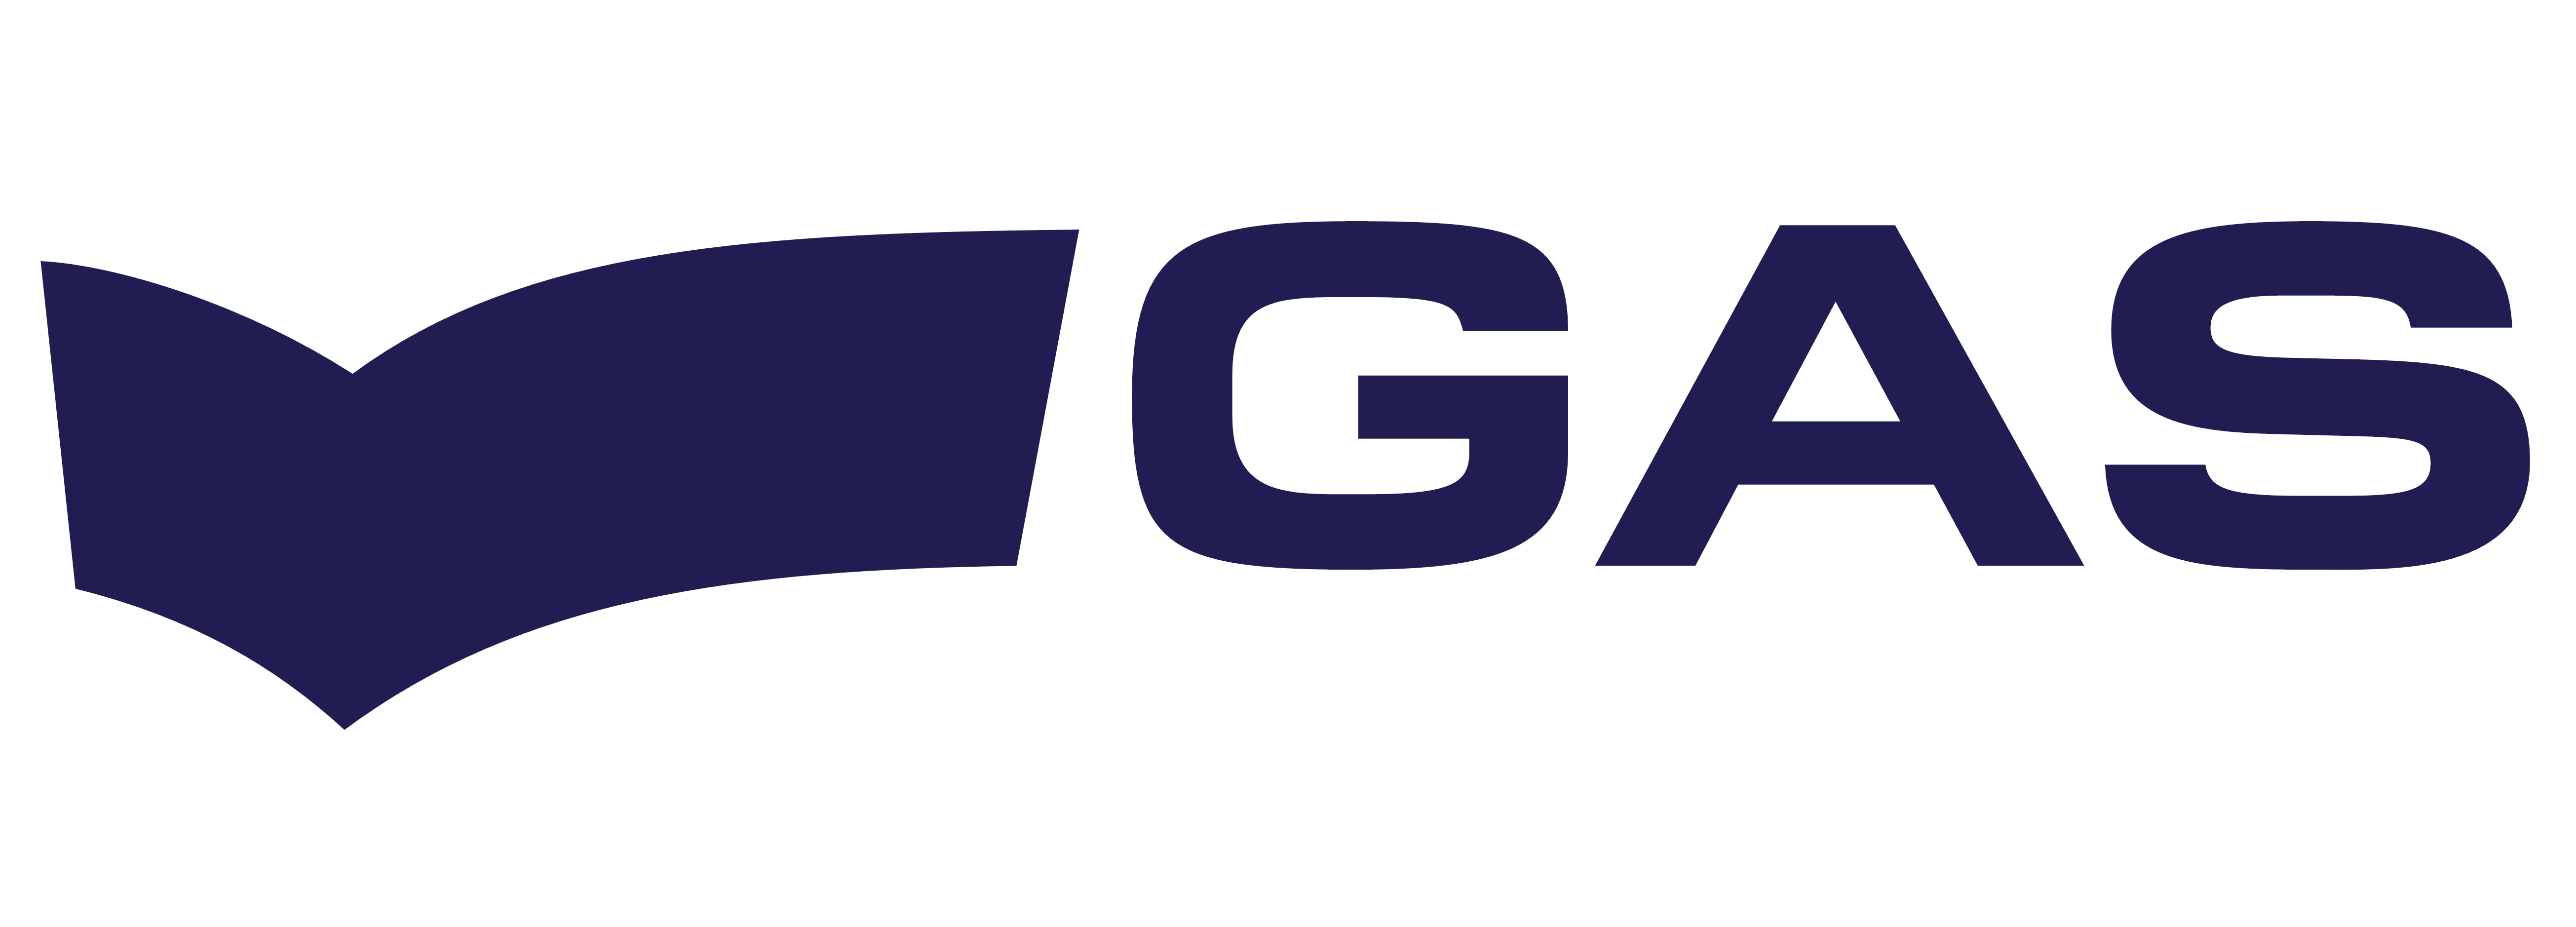 Gas Logo - GAS Jeans – Logos Download